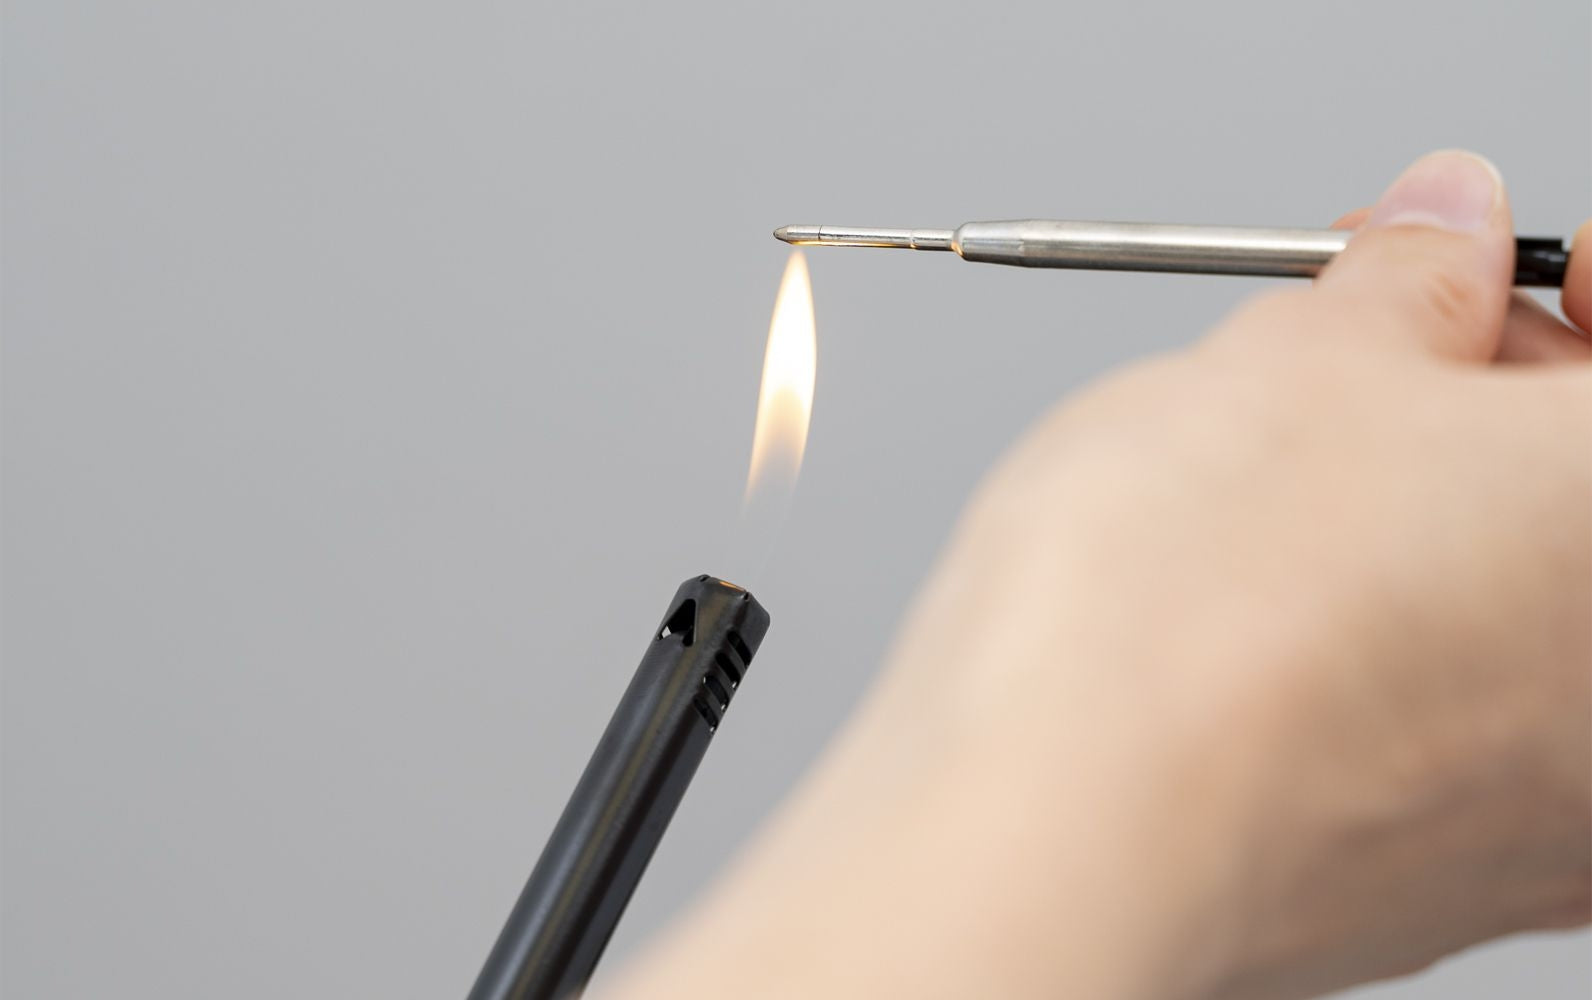 ballpoint refill tip held over lighter flame